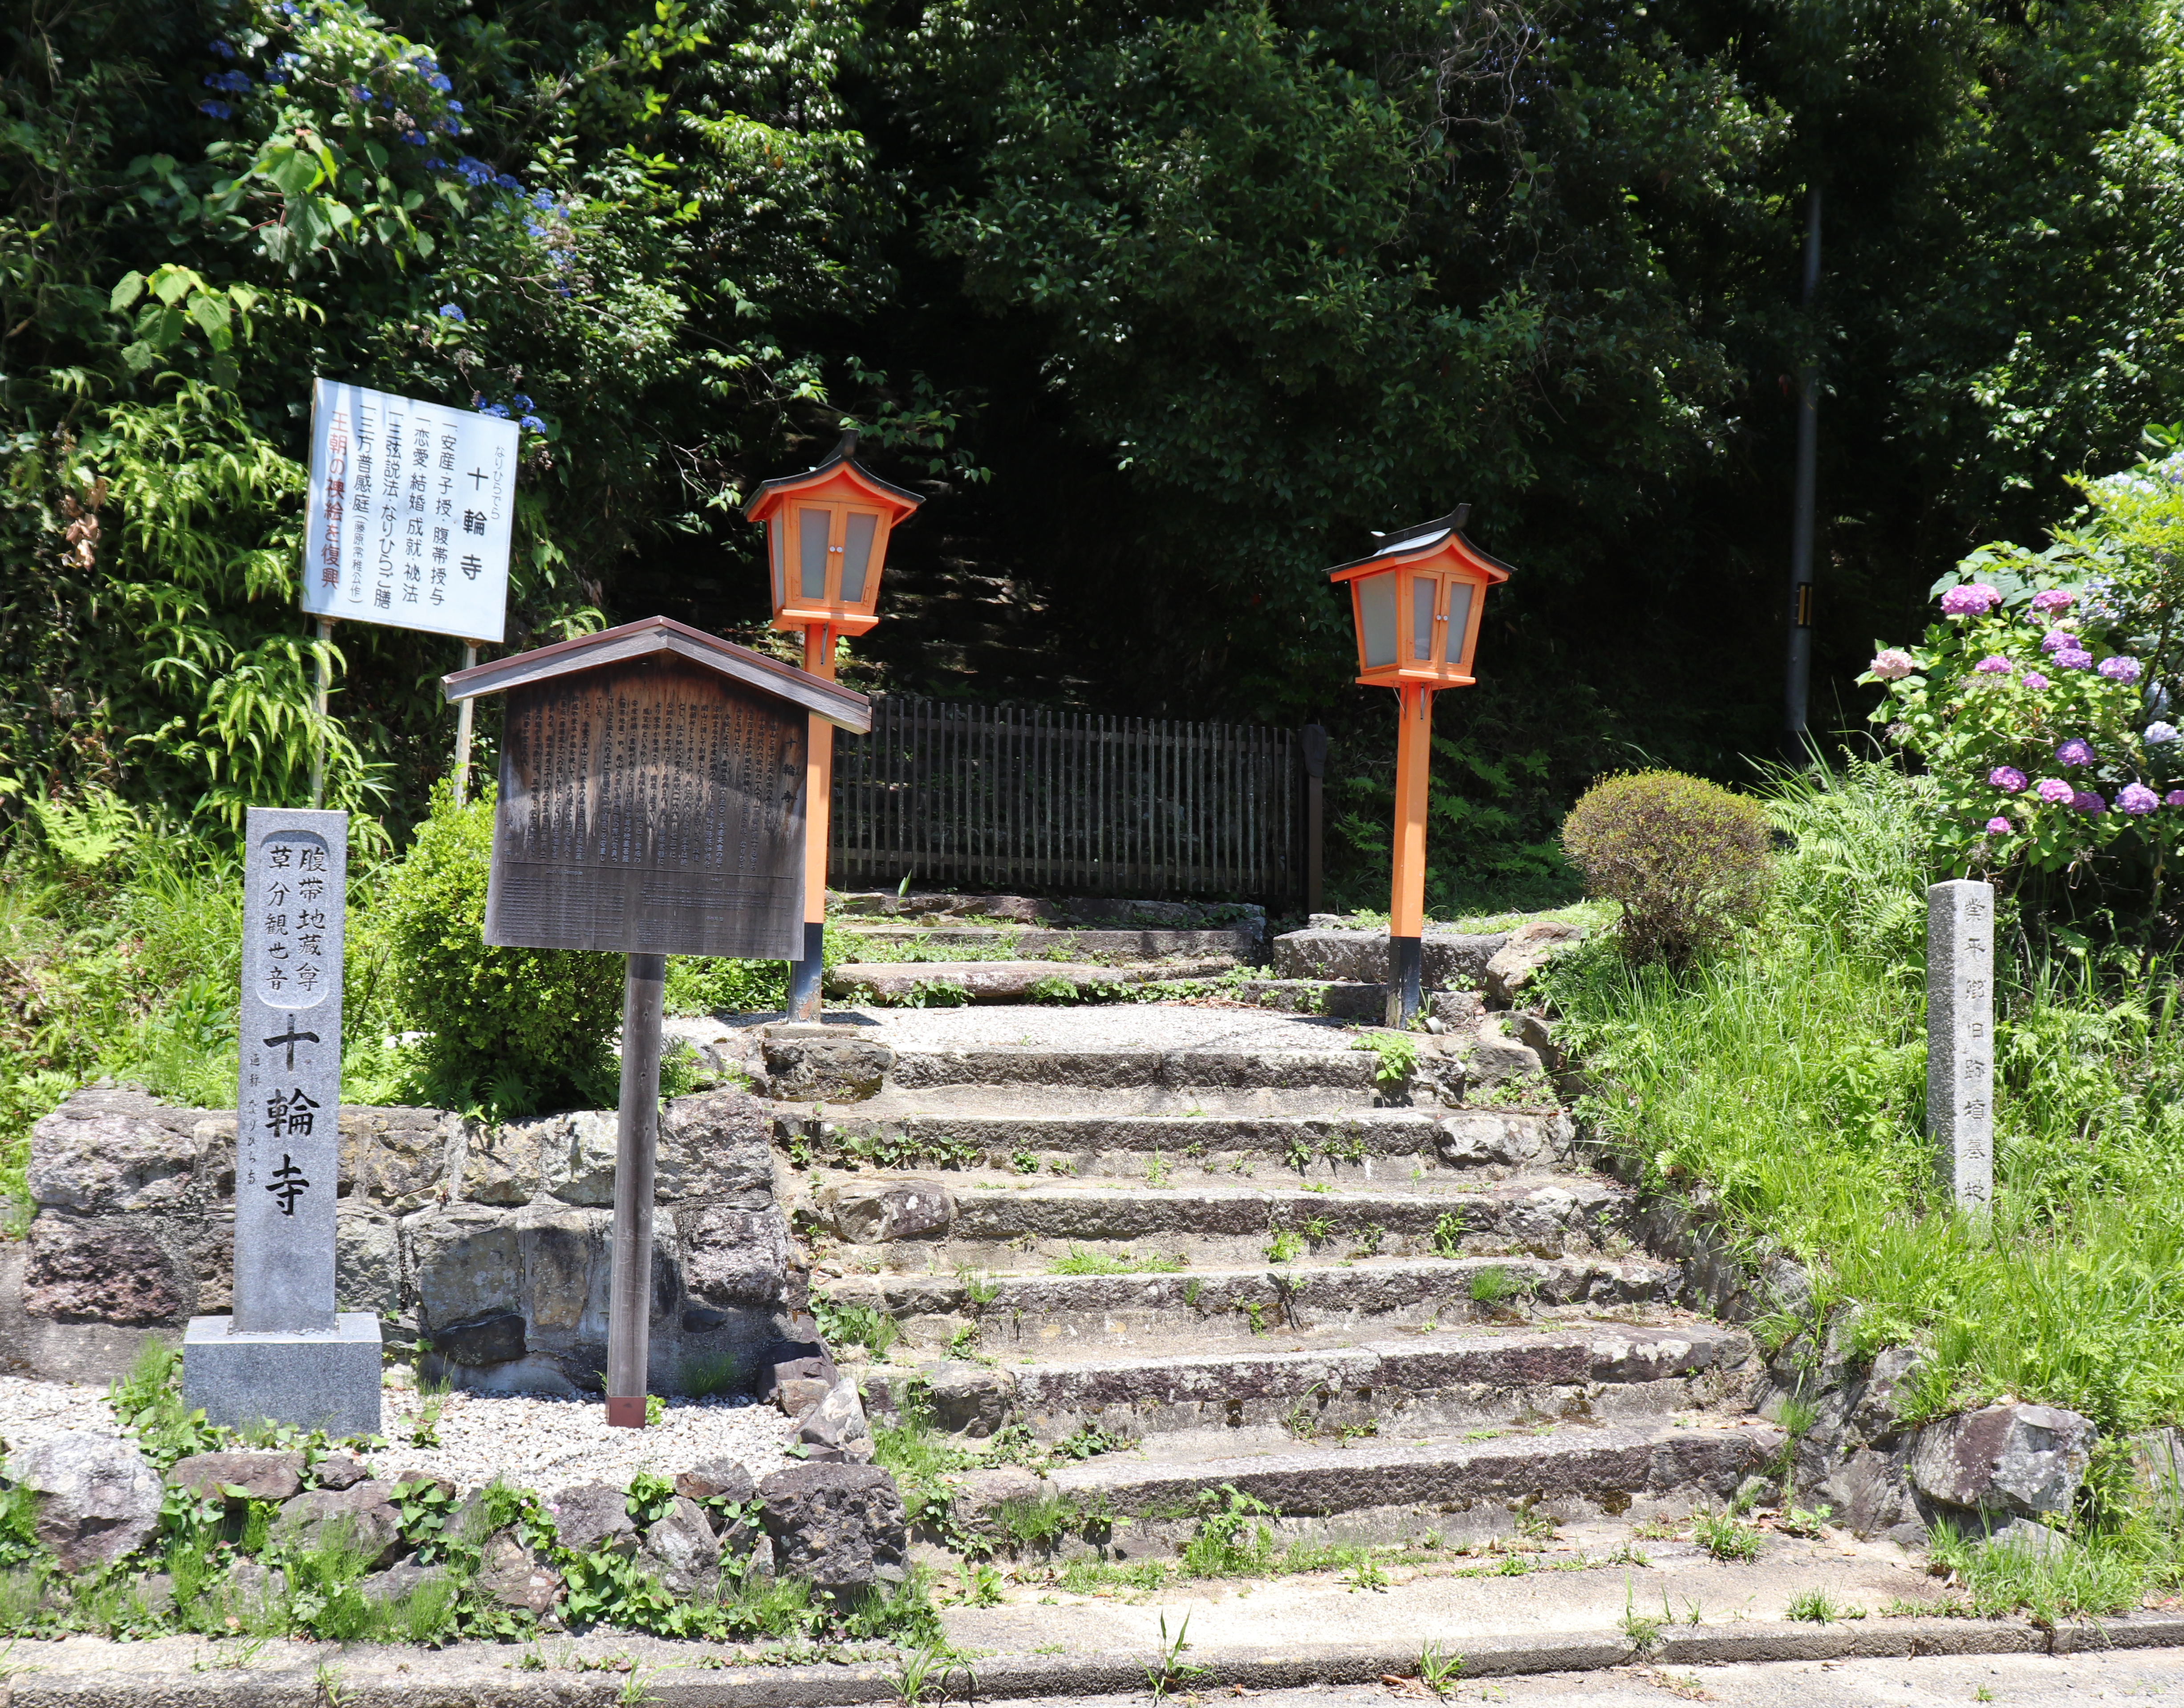 Path to Jurin-ji temple in Kyoto, Japan